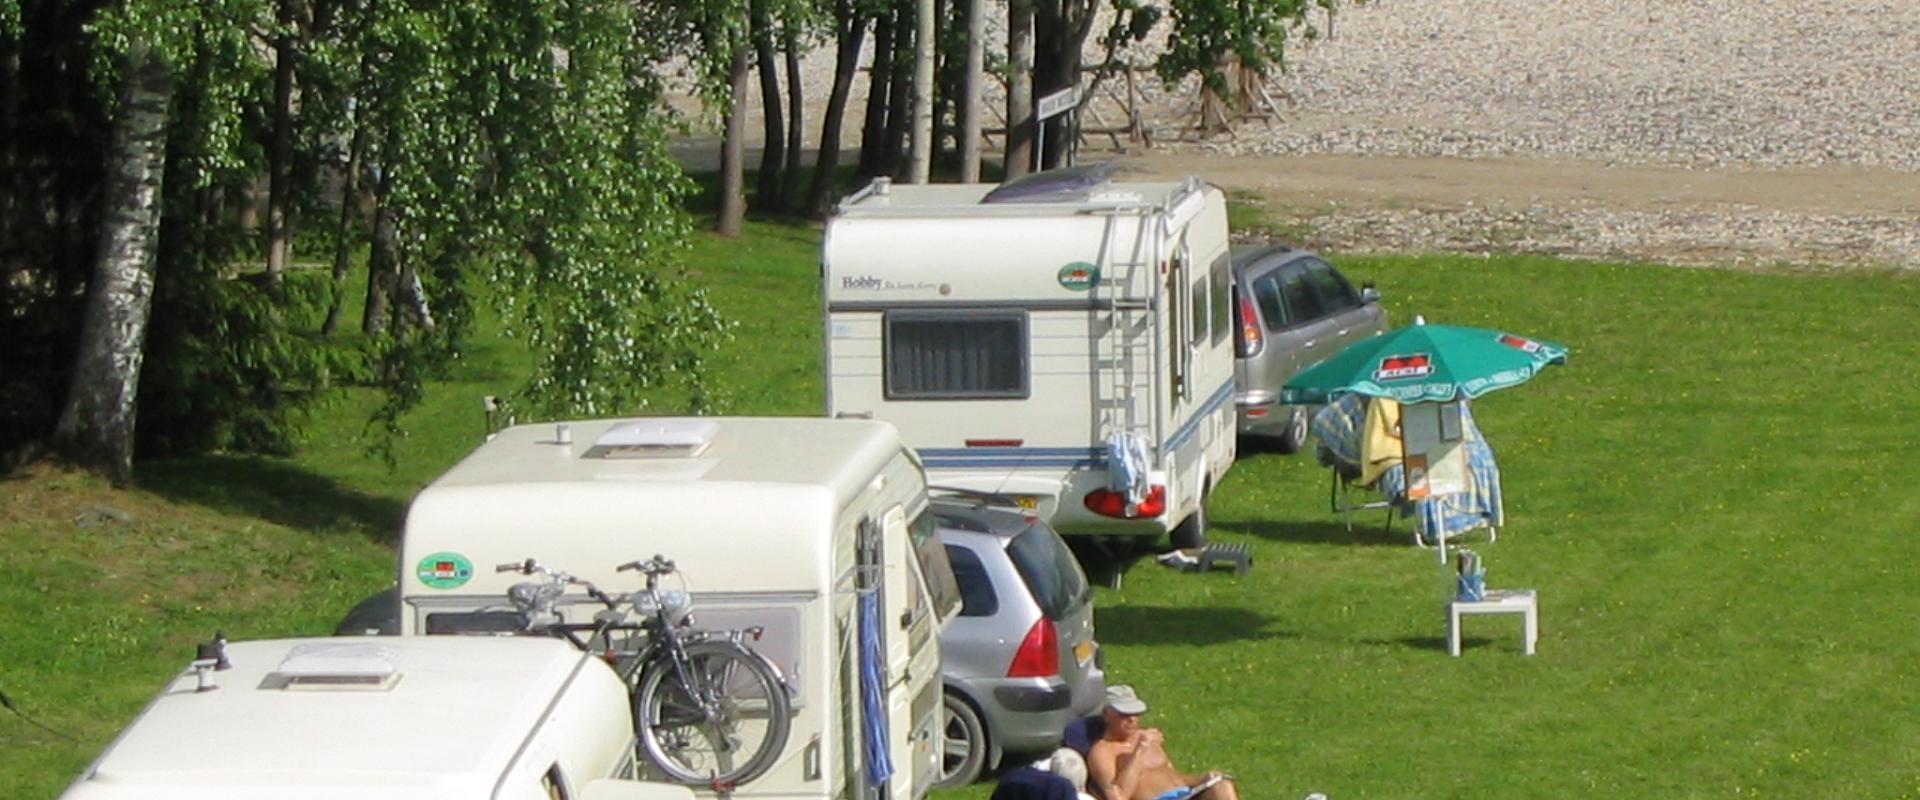 Caravan park of Waide motel